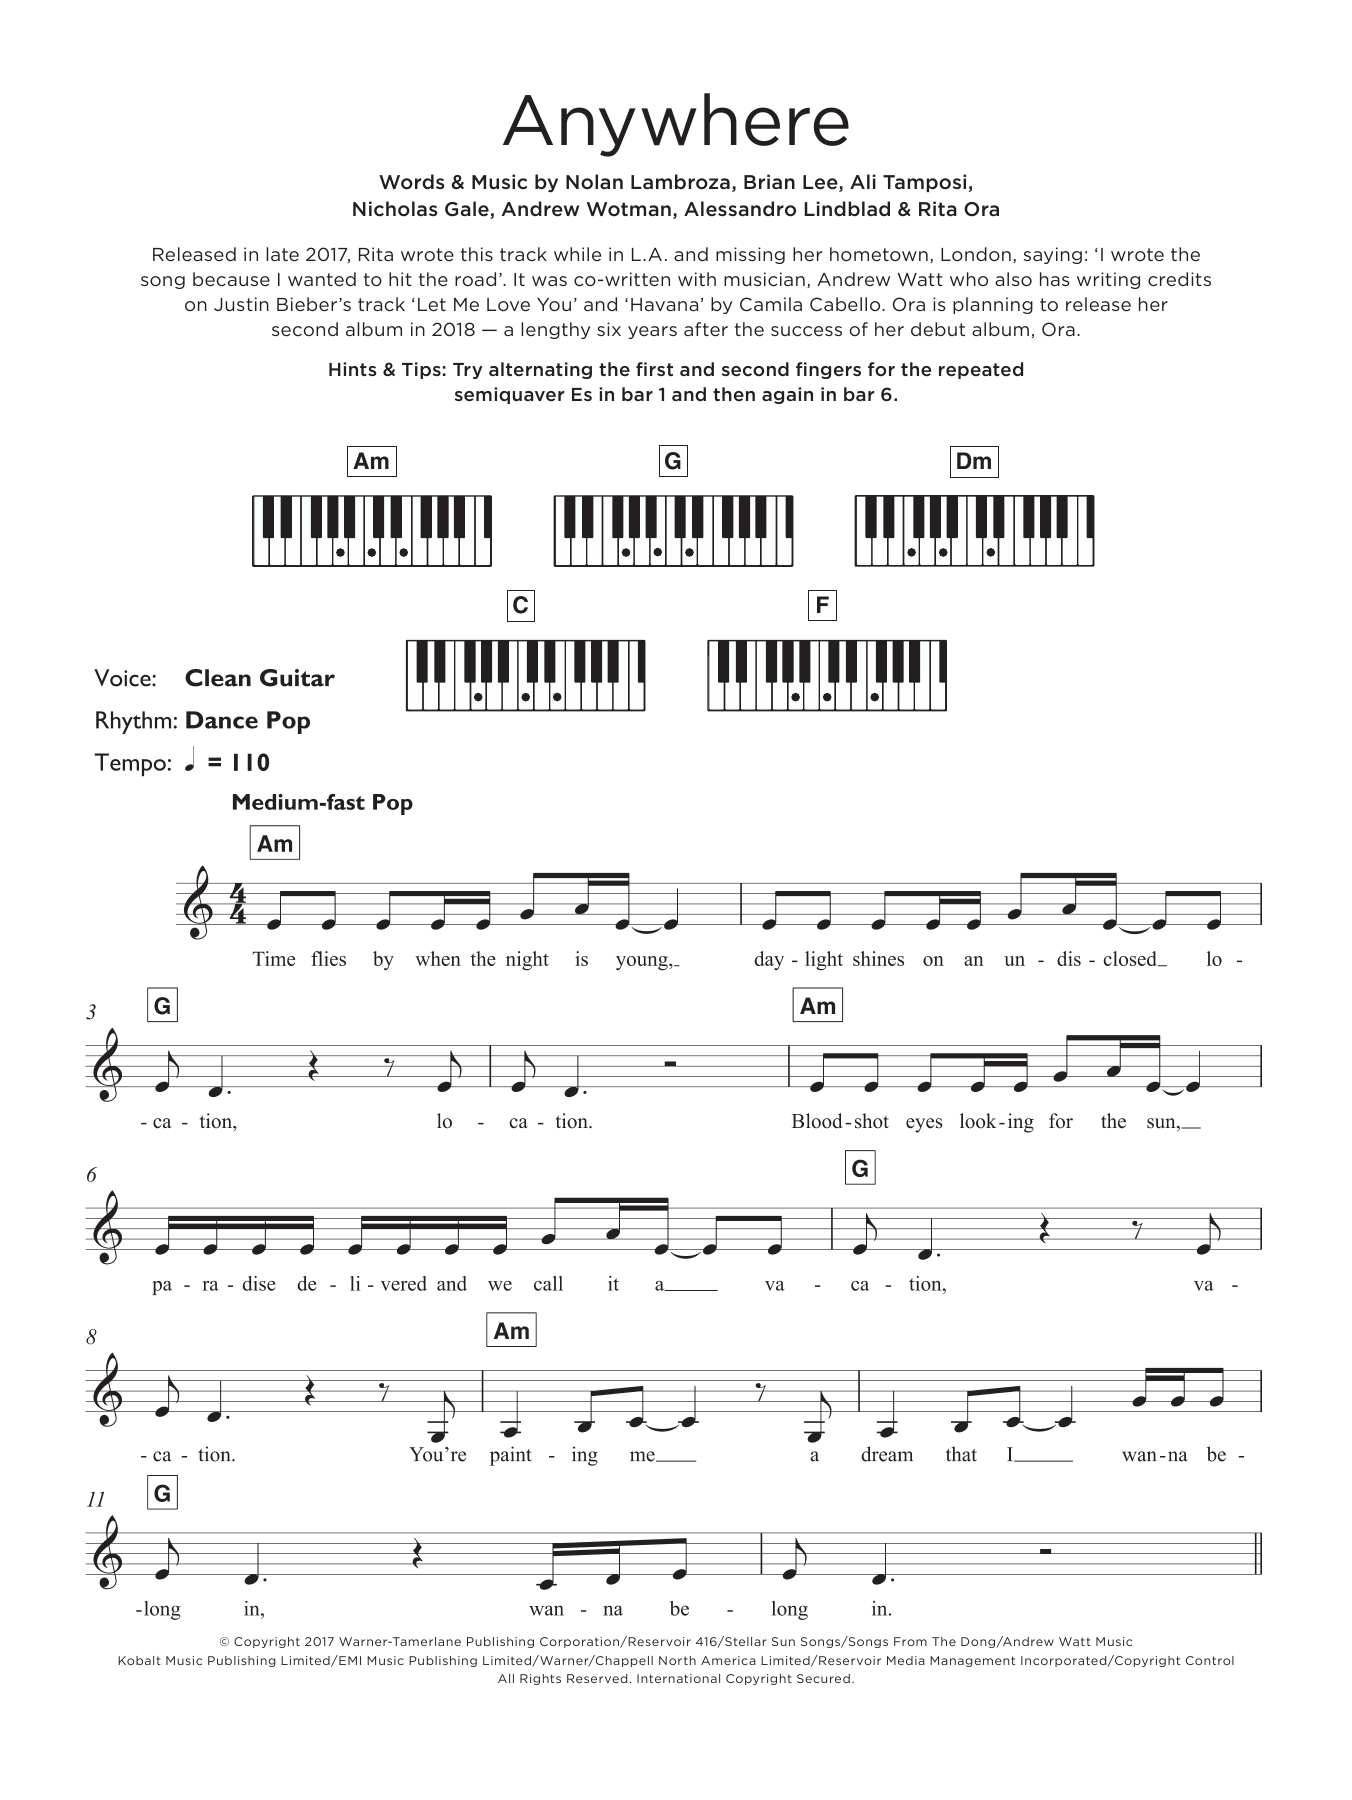 Rita Ora Anywhere Sheet Music Notes & Chords for Ukulele - Download or Print PDF